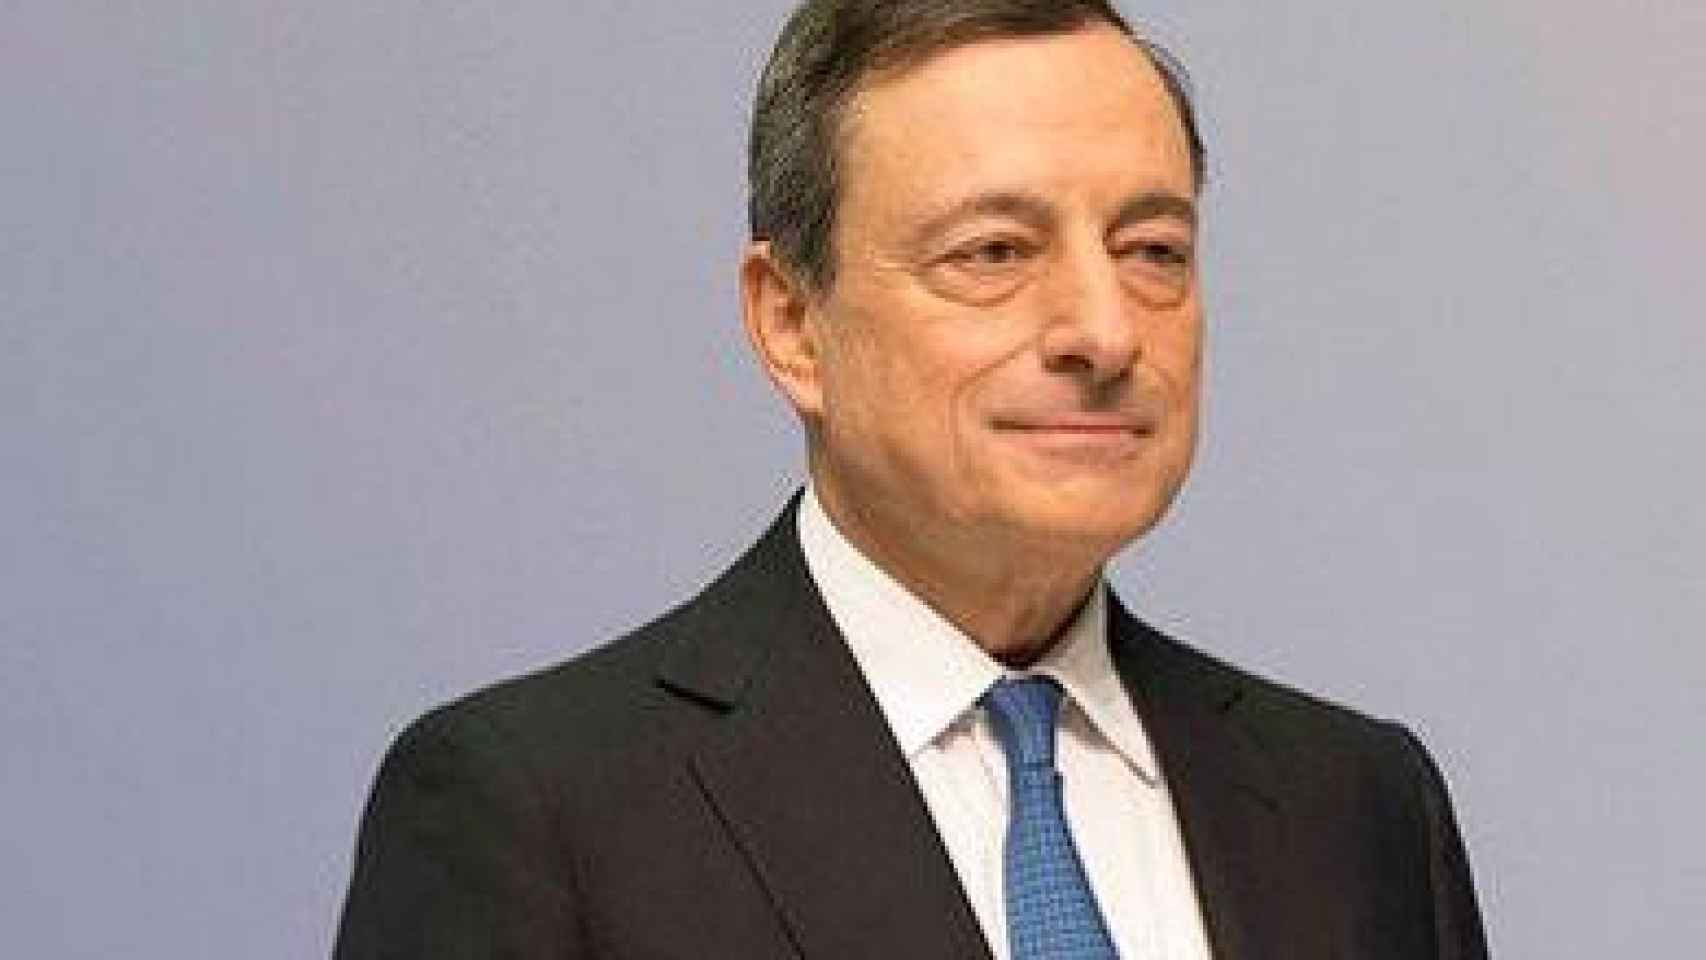 El presidente del Banco Centrral Europeo, Mario Draghi, en la conferencia de prensa de este jueves.